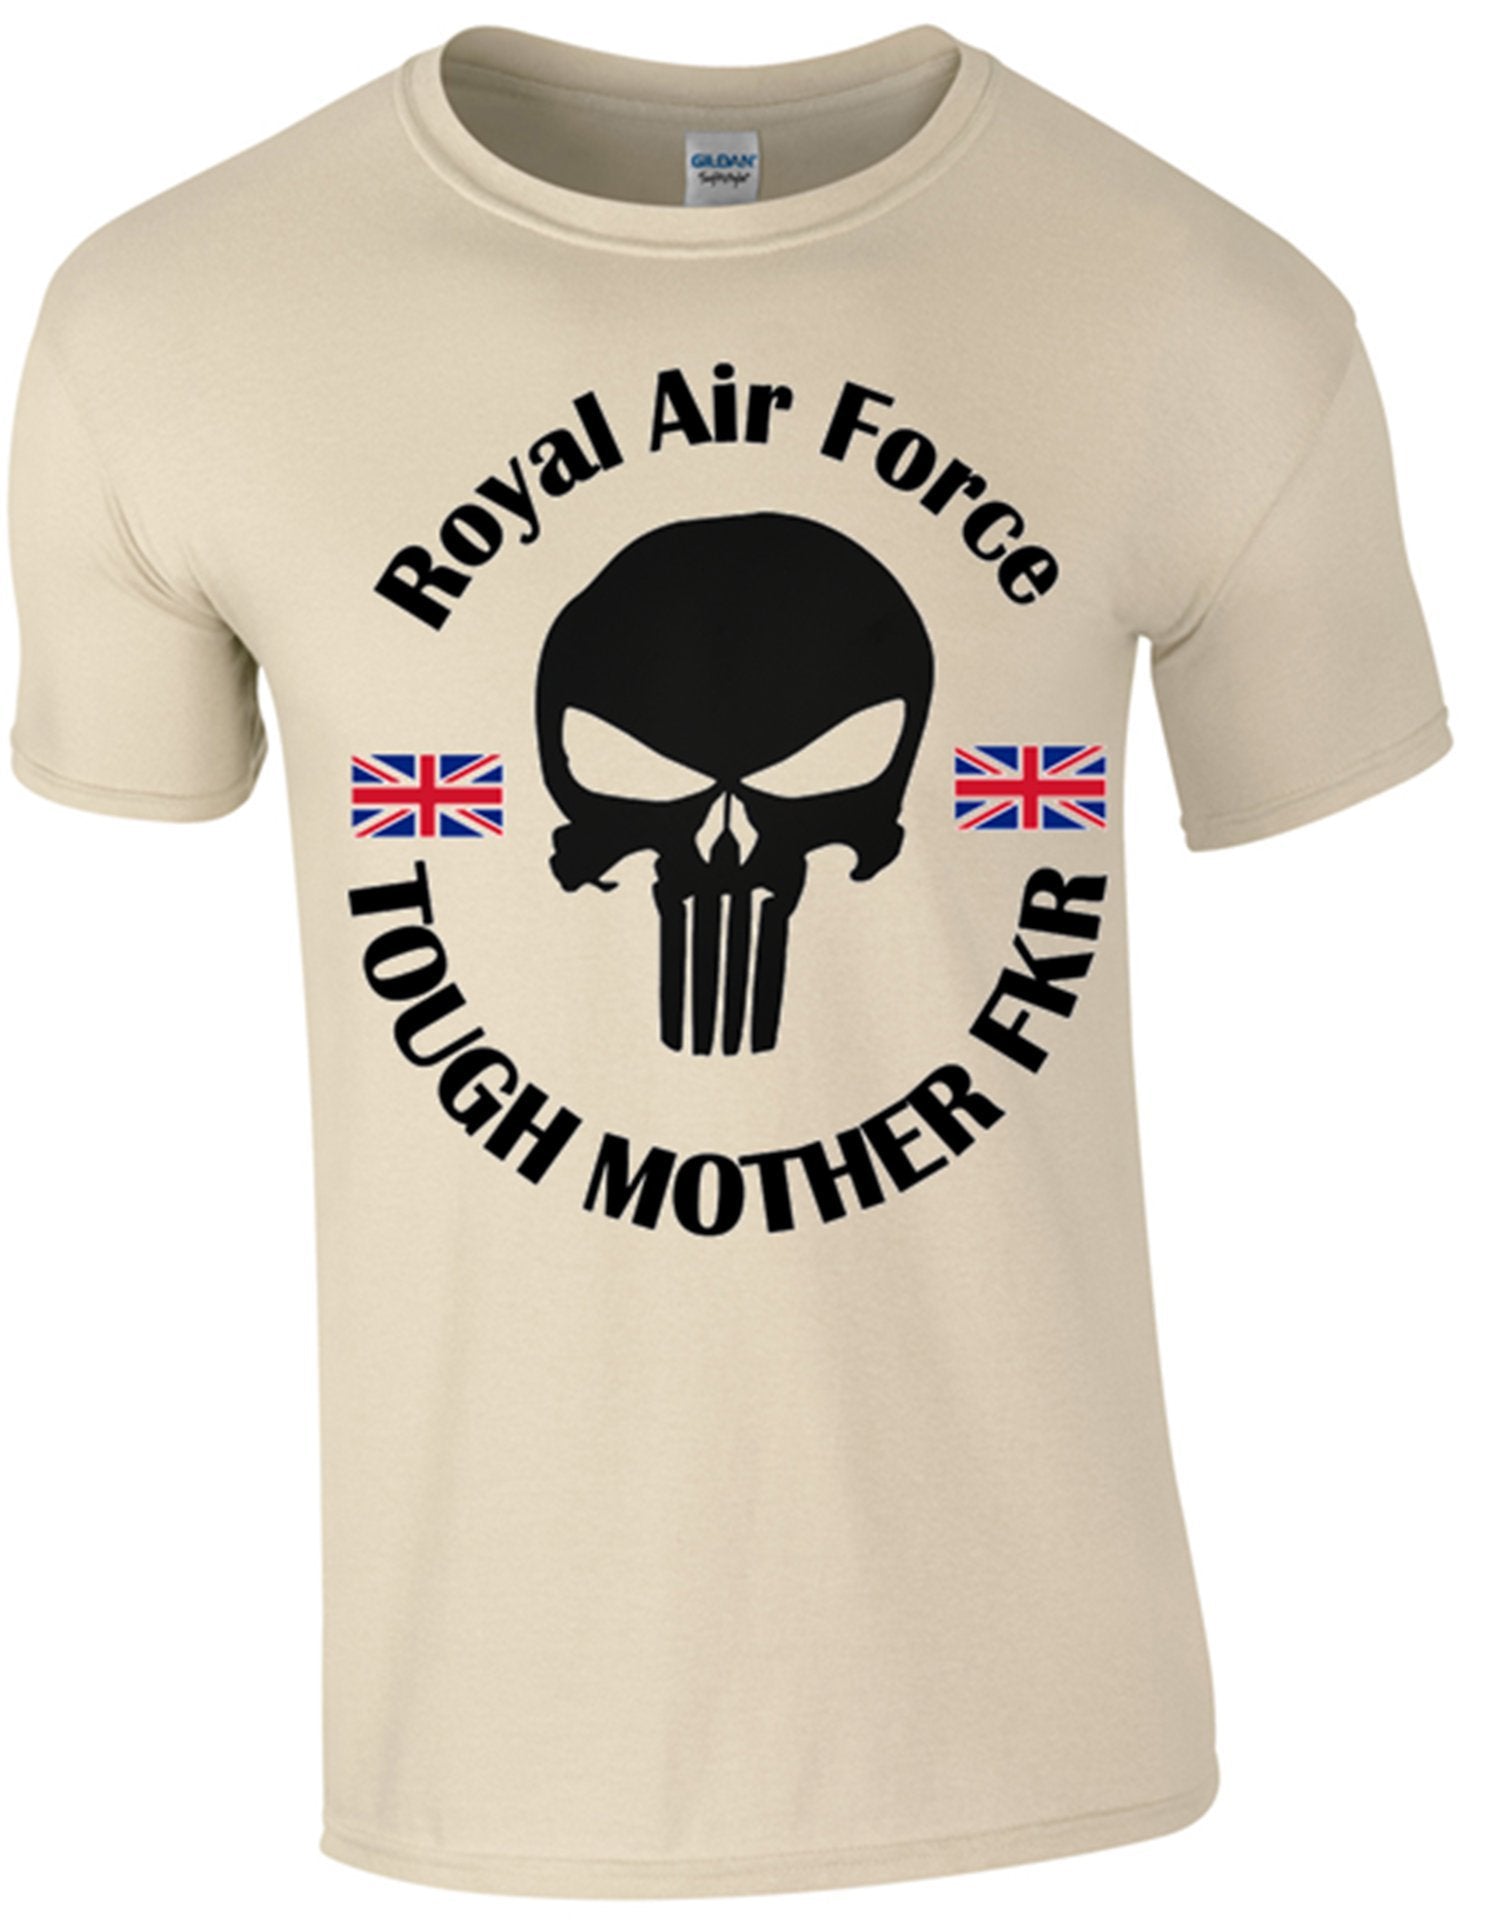 Royal Air Force TMF T-Shirt - Army 1157 kit Sand / S Army 1157 Kit